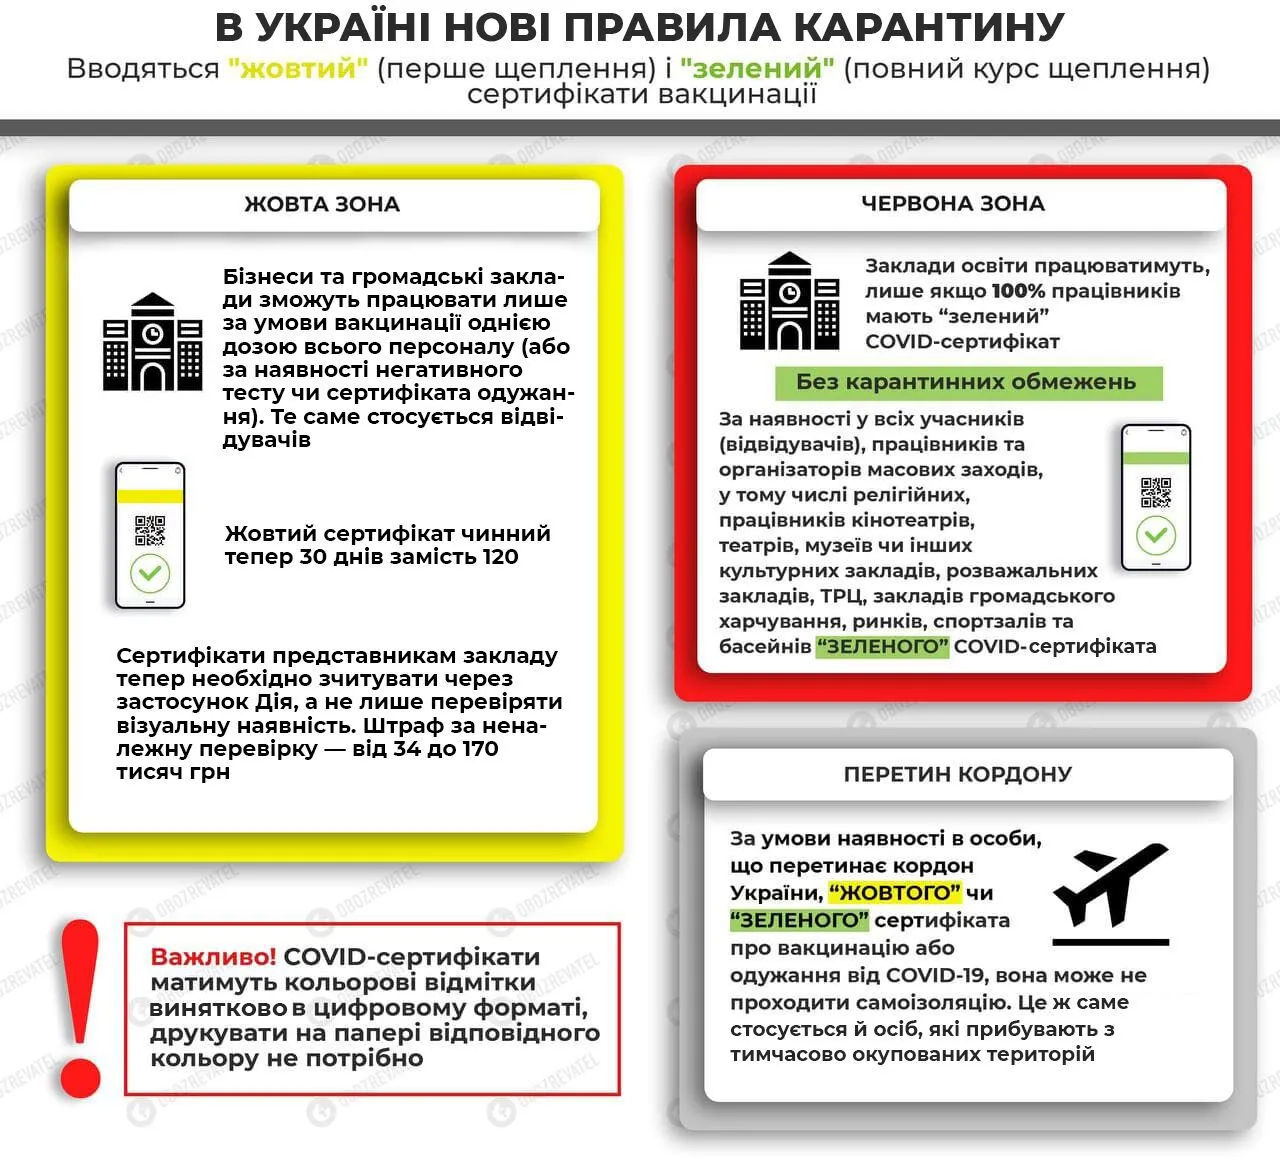 Карантинные ограничения в Украине с 6 декабря